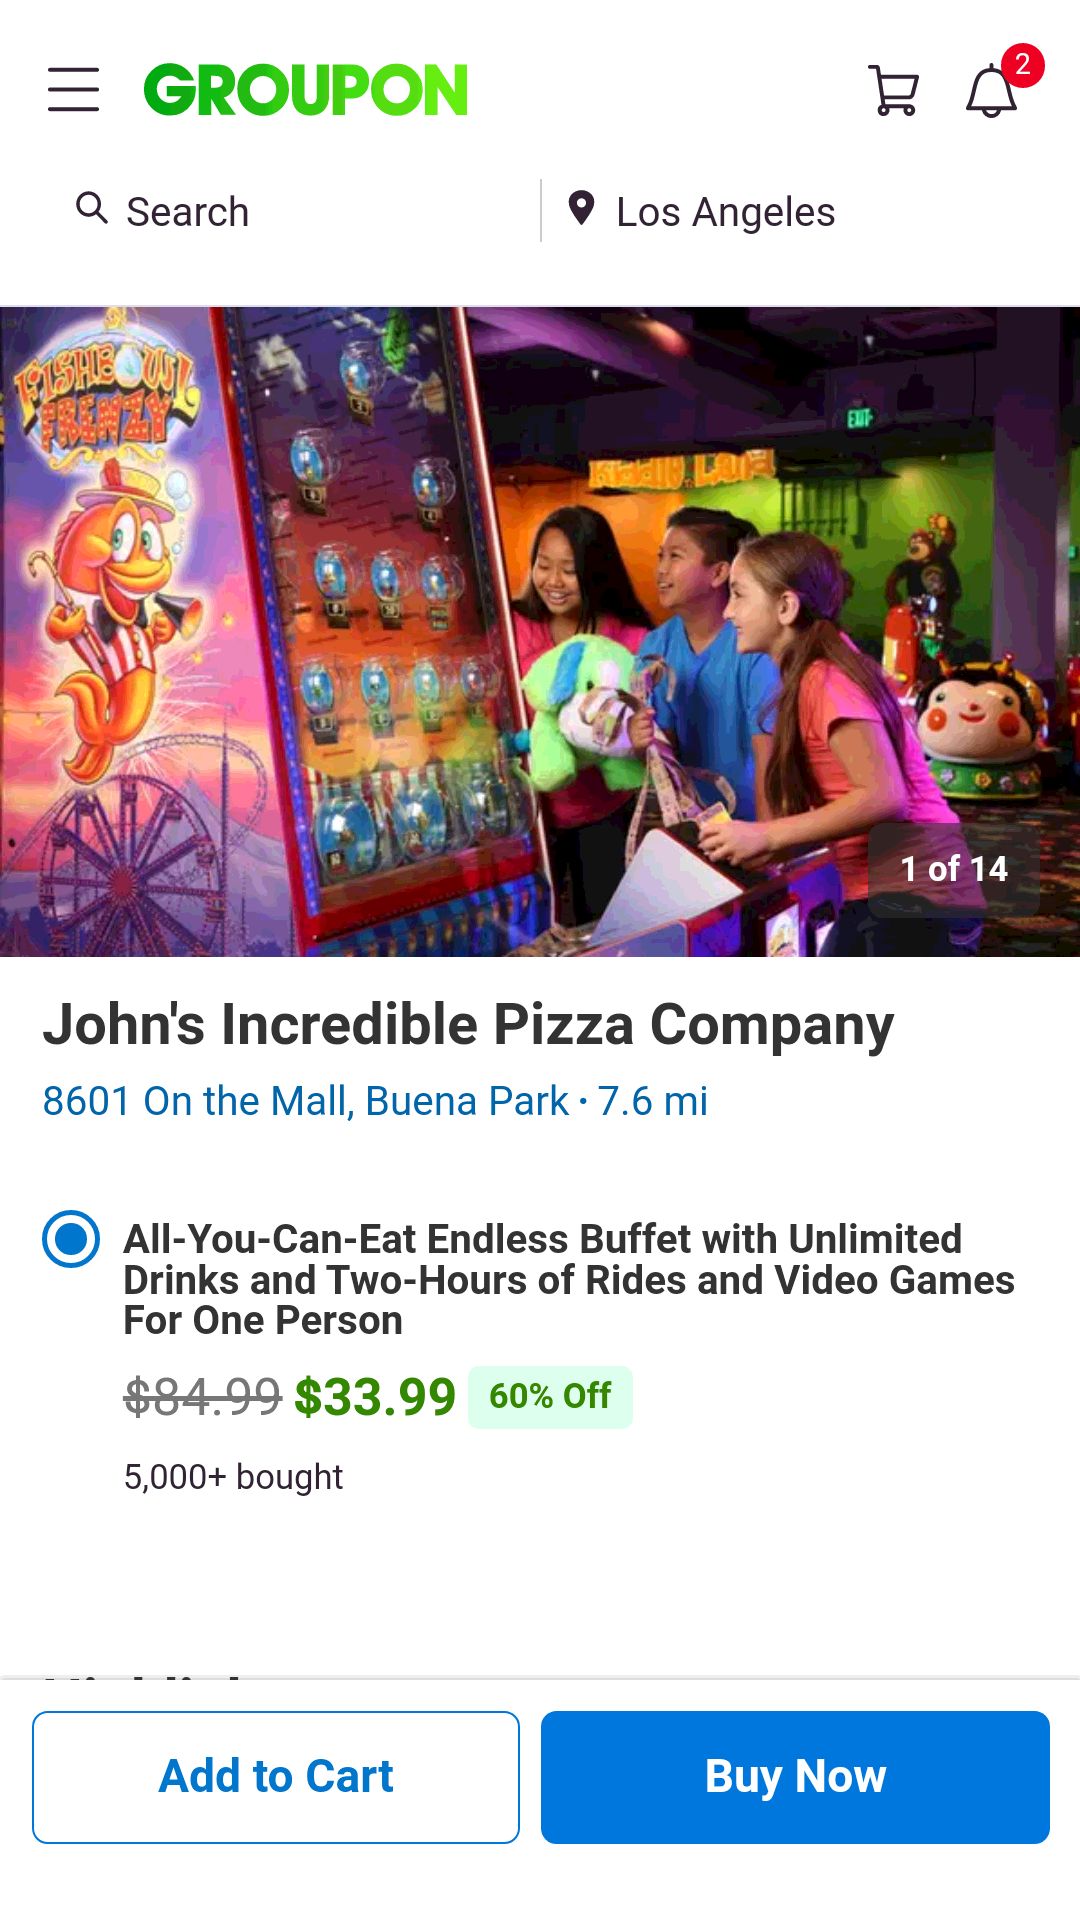 John's incredible pizza自助餐加免费饮料再加2小时畅玩游艺机